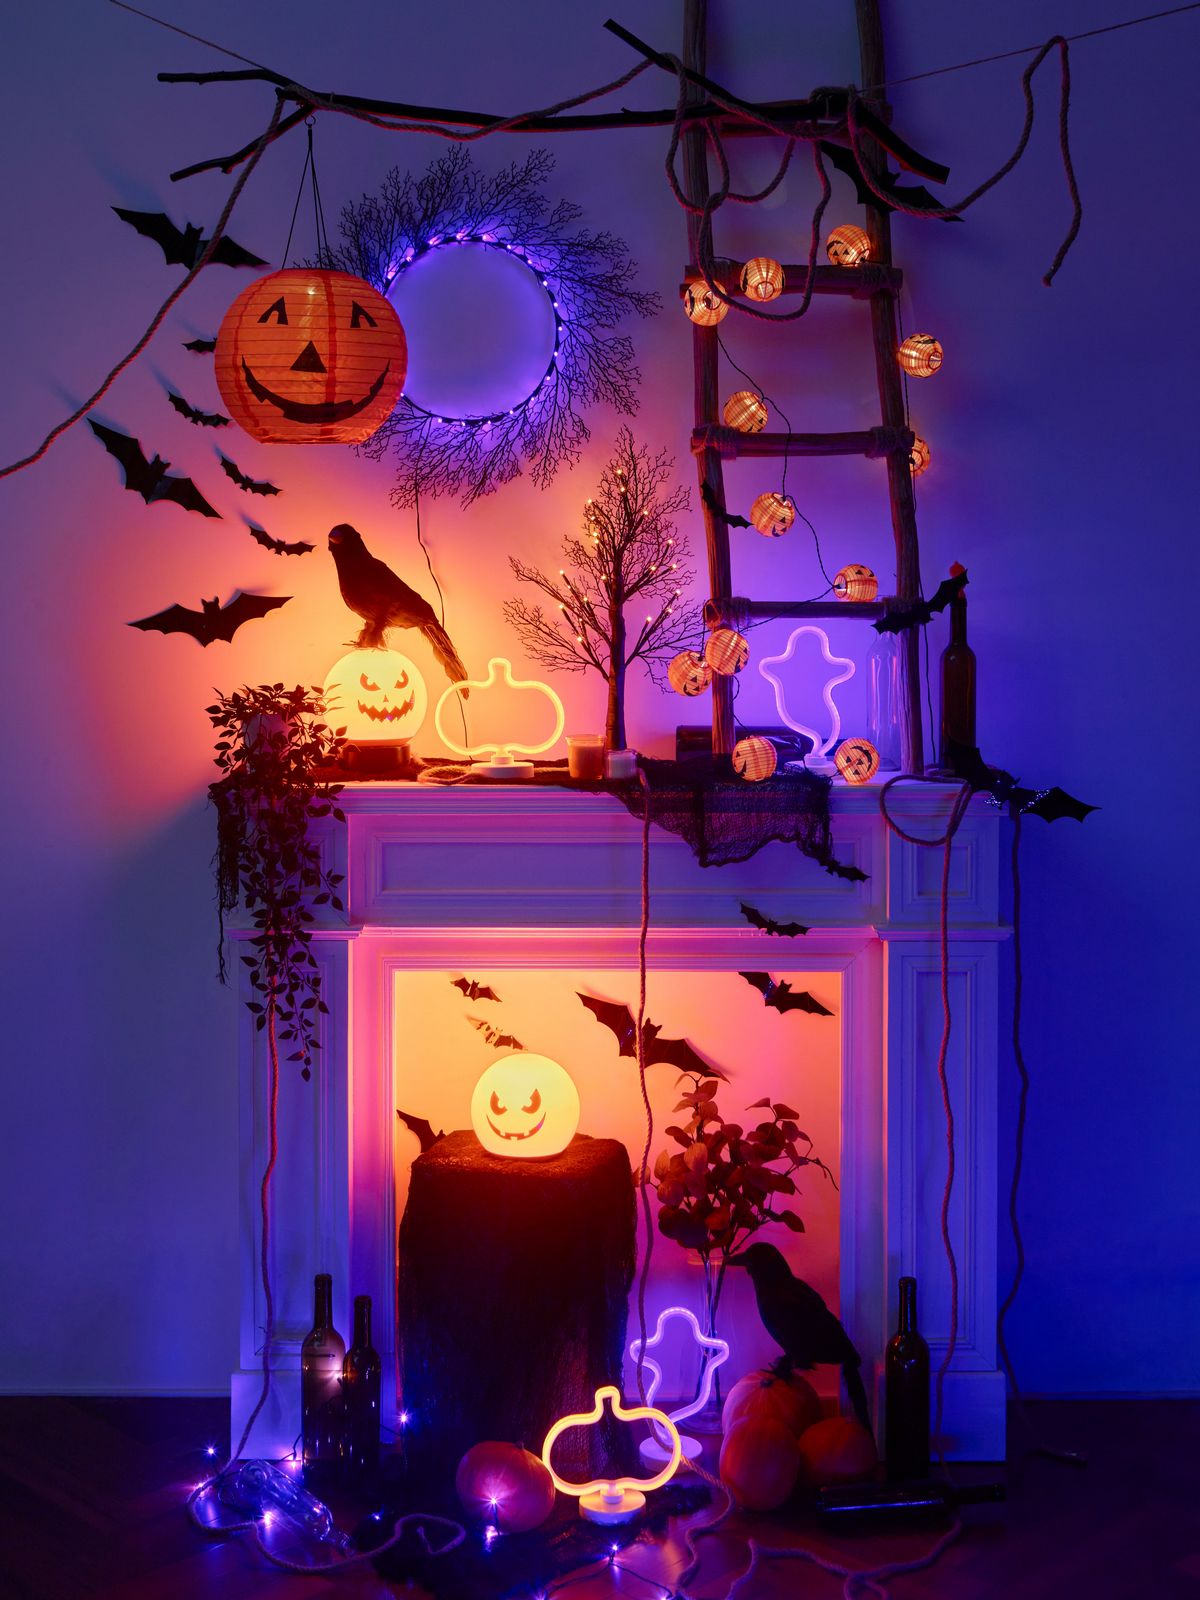 IKEA a lancé sa toute première collection de décorations et d’accessoires d'Halloween pour la maison, baptisée KUSTFYR, qui comprend plus de 30 articles effrayants et mignons.